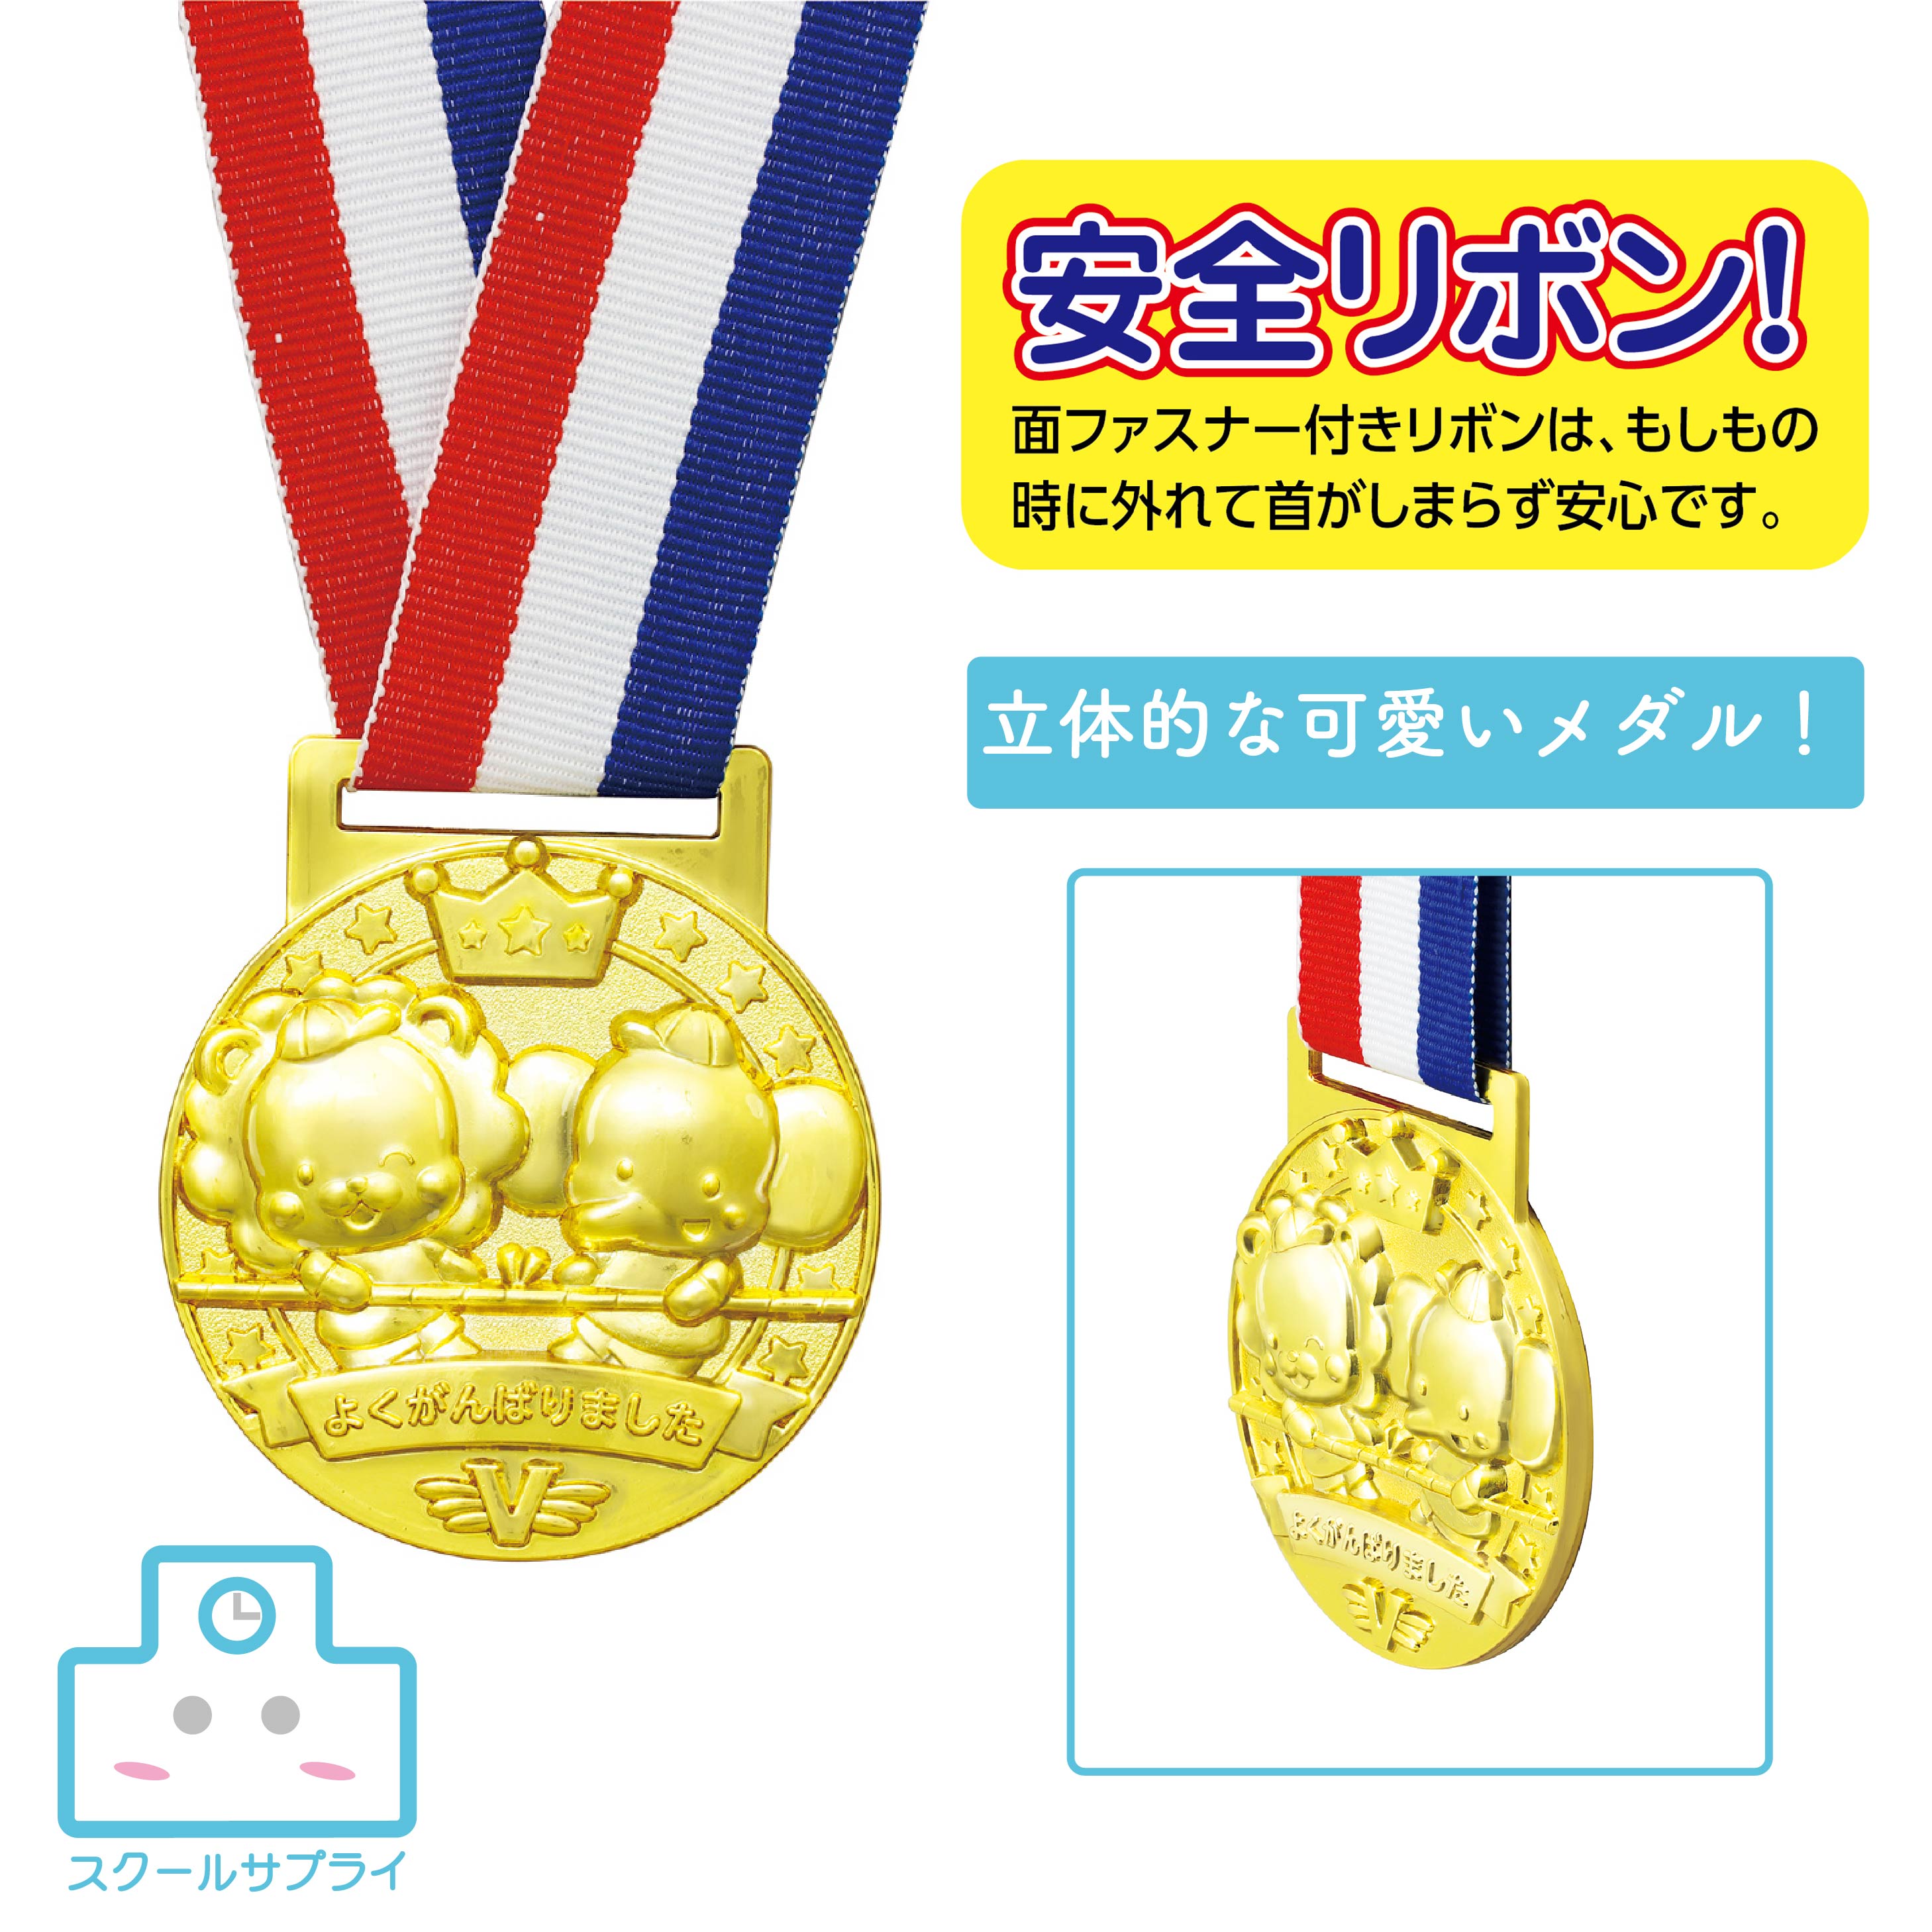 【個人宅配送不可】 3D合金メダル つなひき アーテック